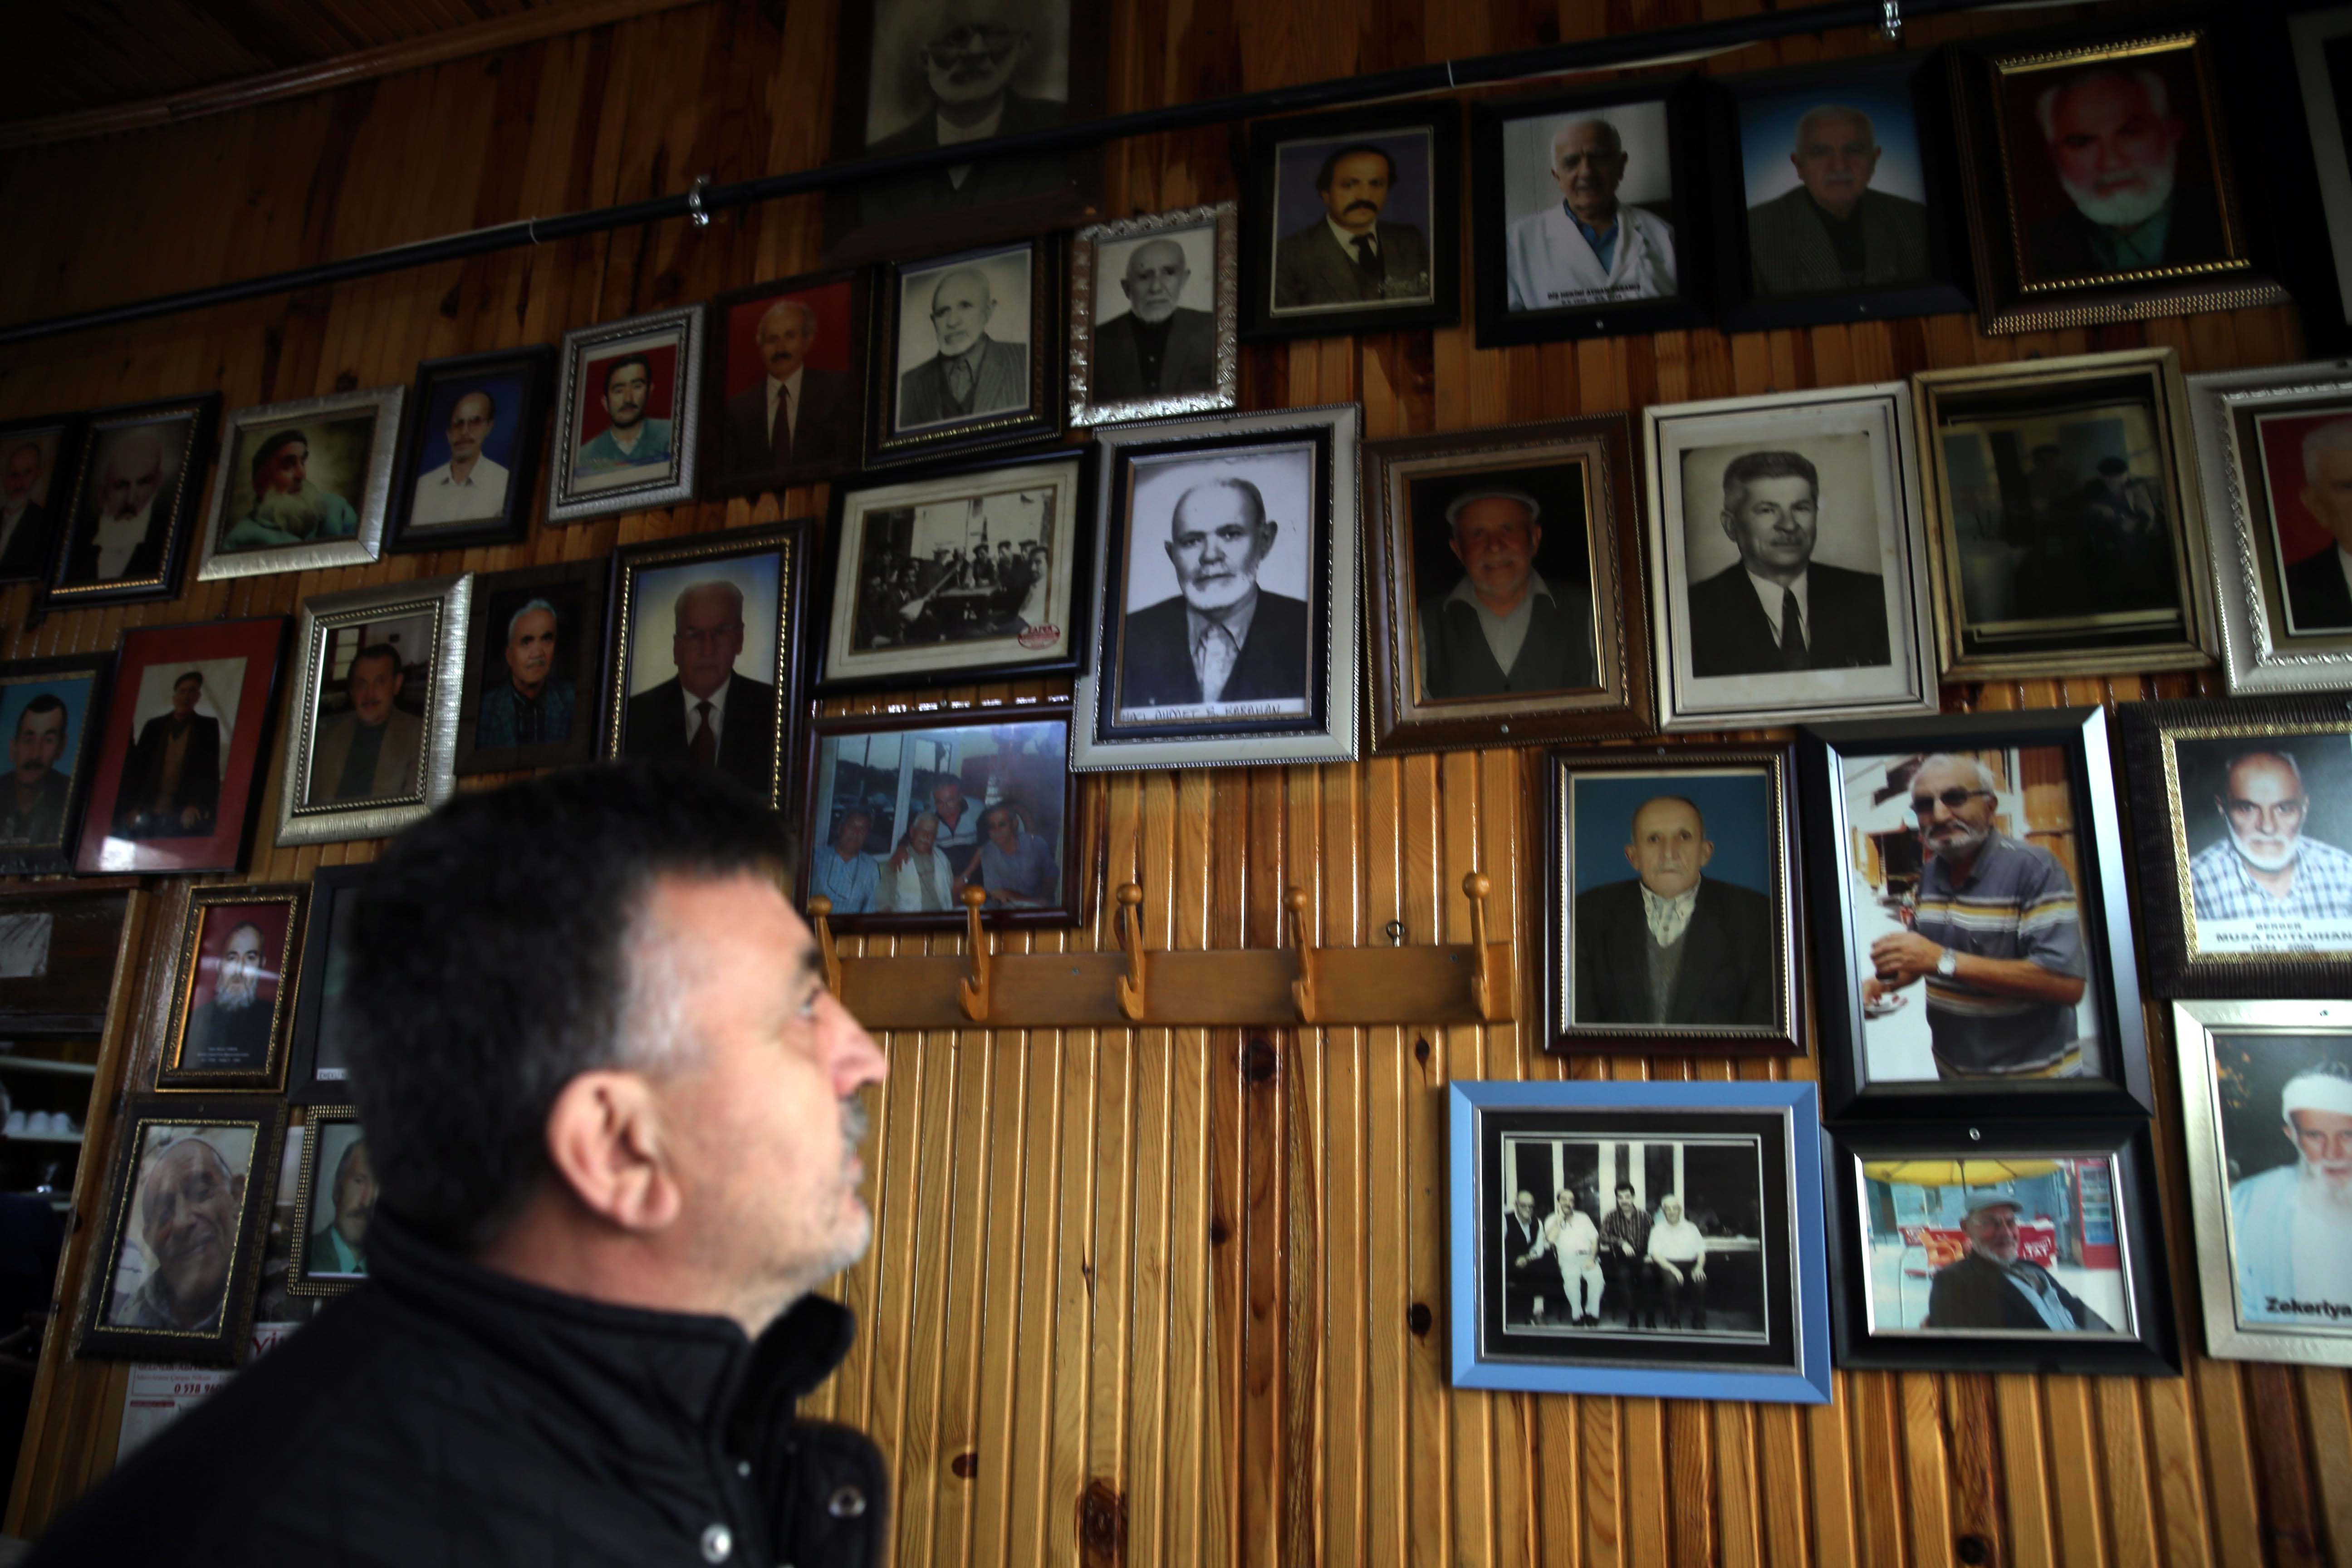 Ölen müşterilerin anıları tarihi kahvehanenin duvarlarındaki fotoğraflarla yaşatılıyor